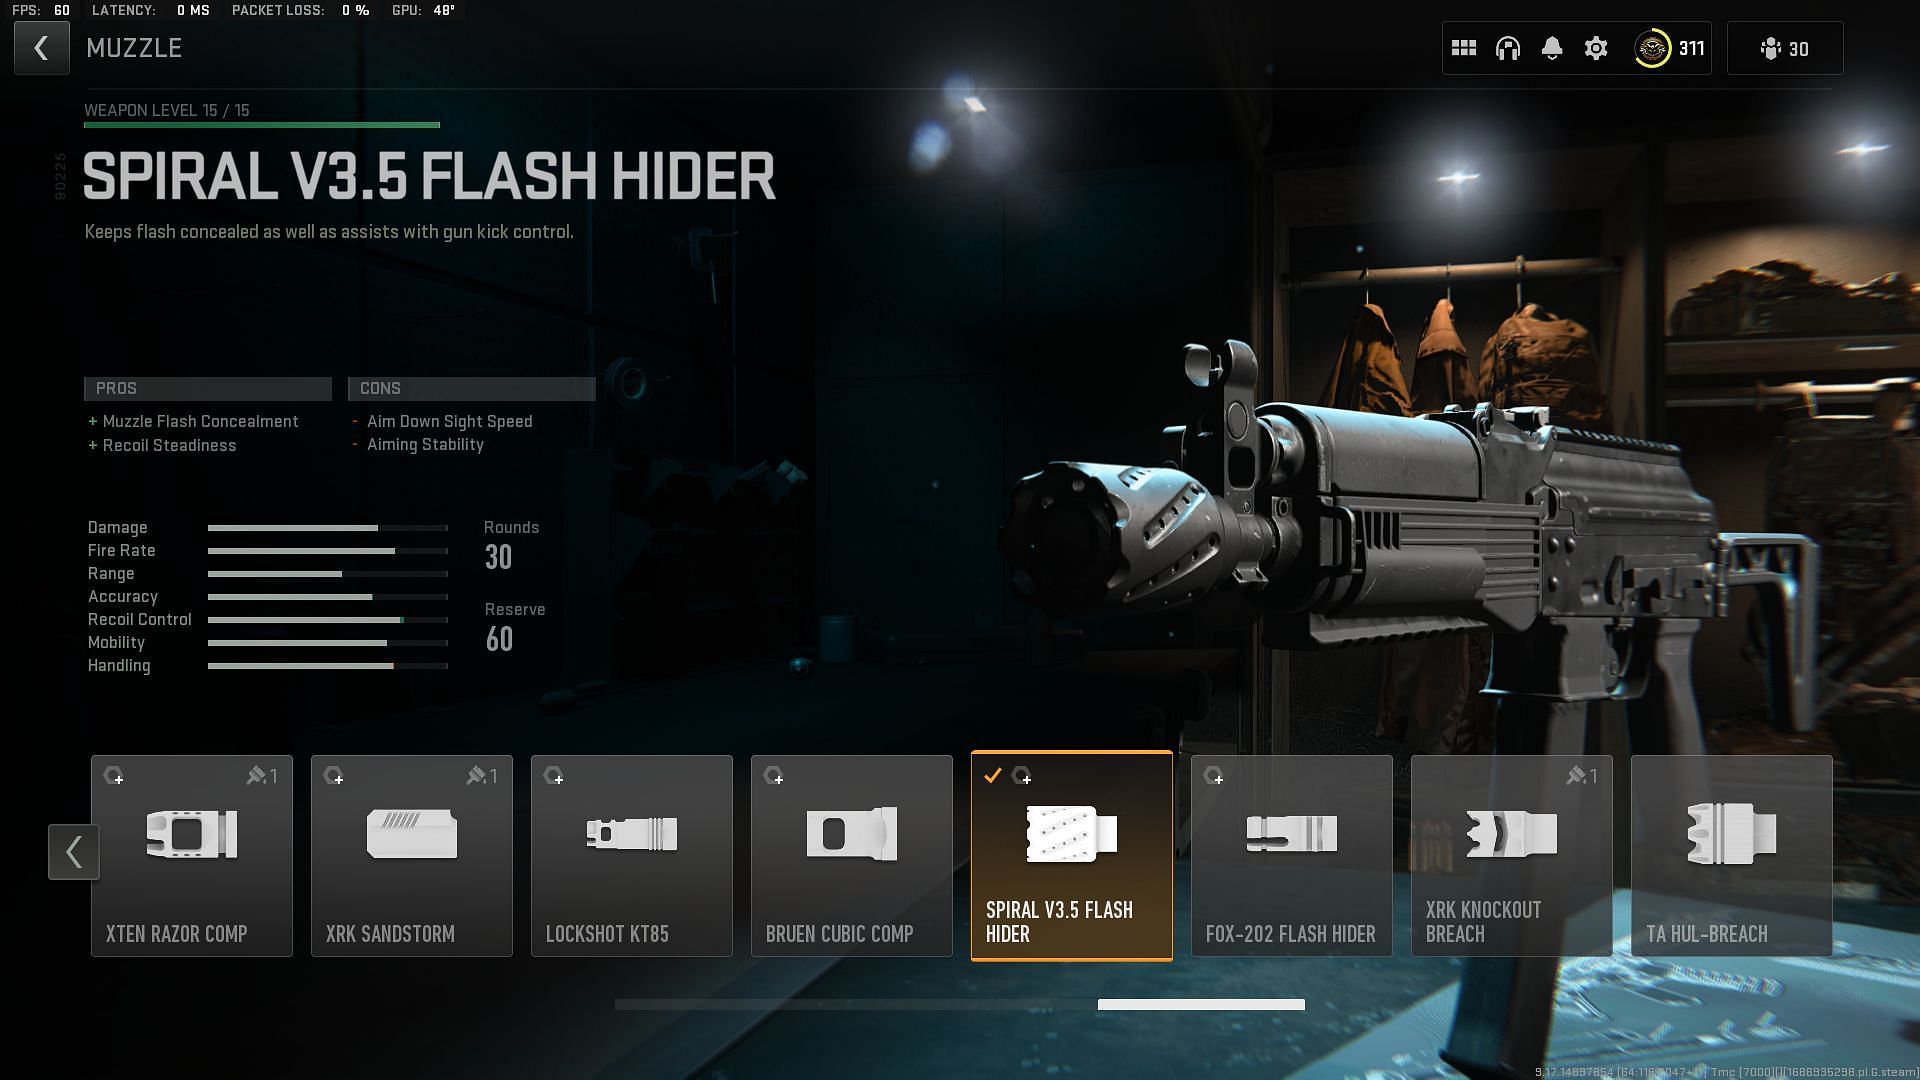 Spiral V3.5 Flash Hider (Image via Activision)